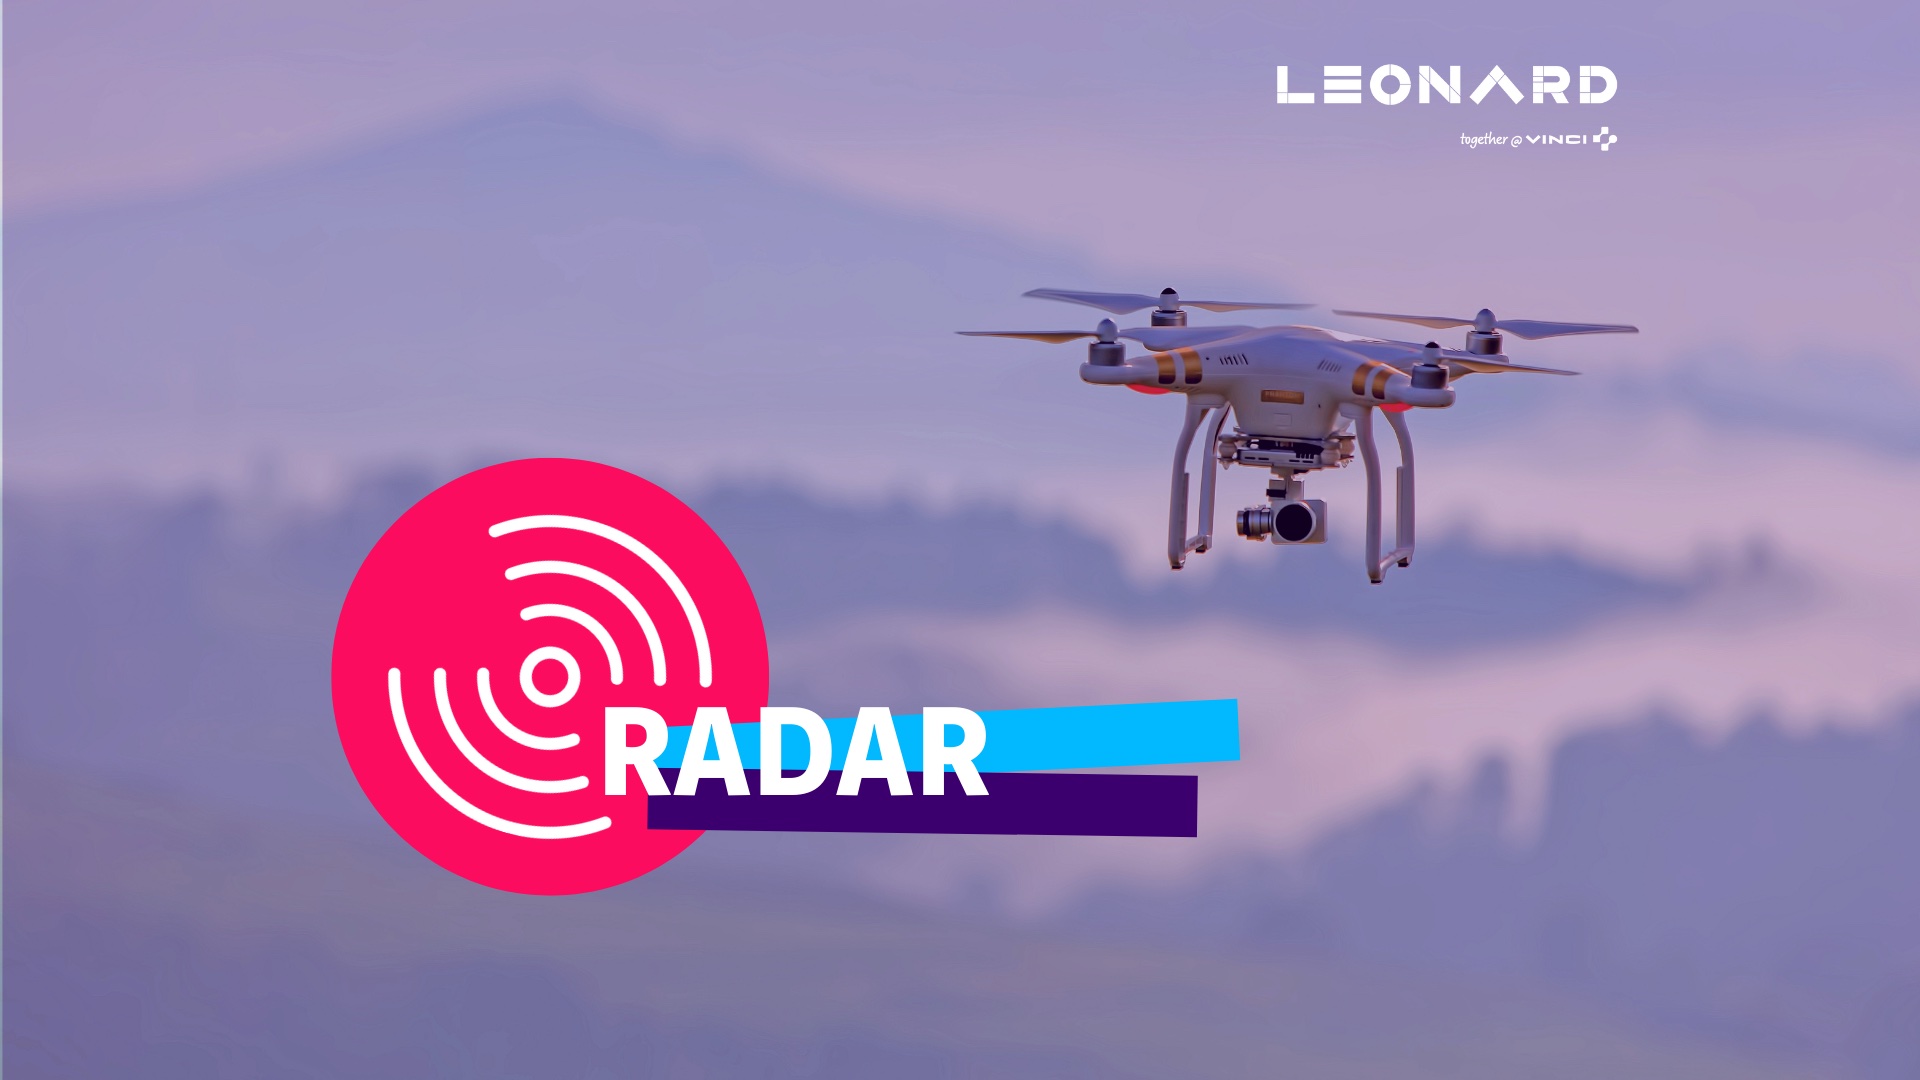 Radar – Notre sélection de business innovants #61